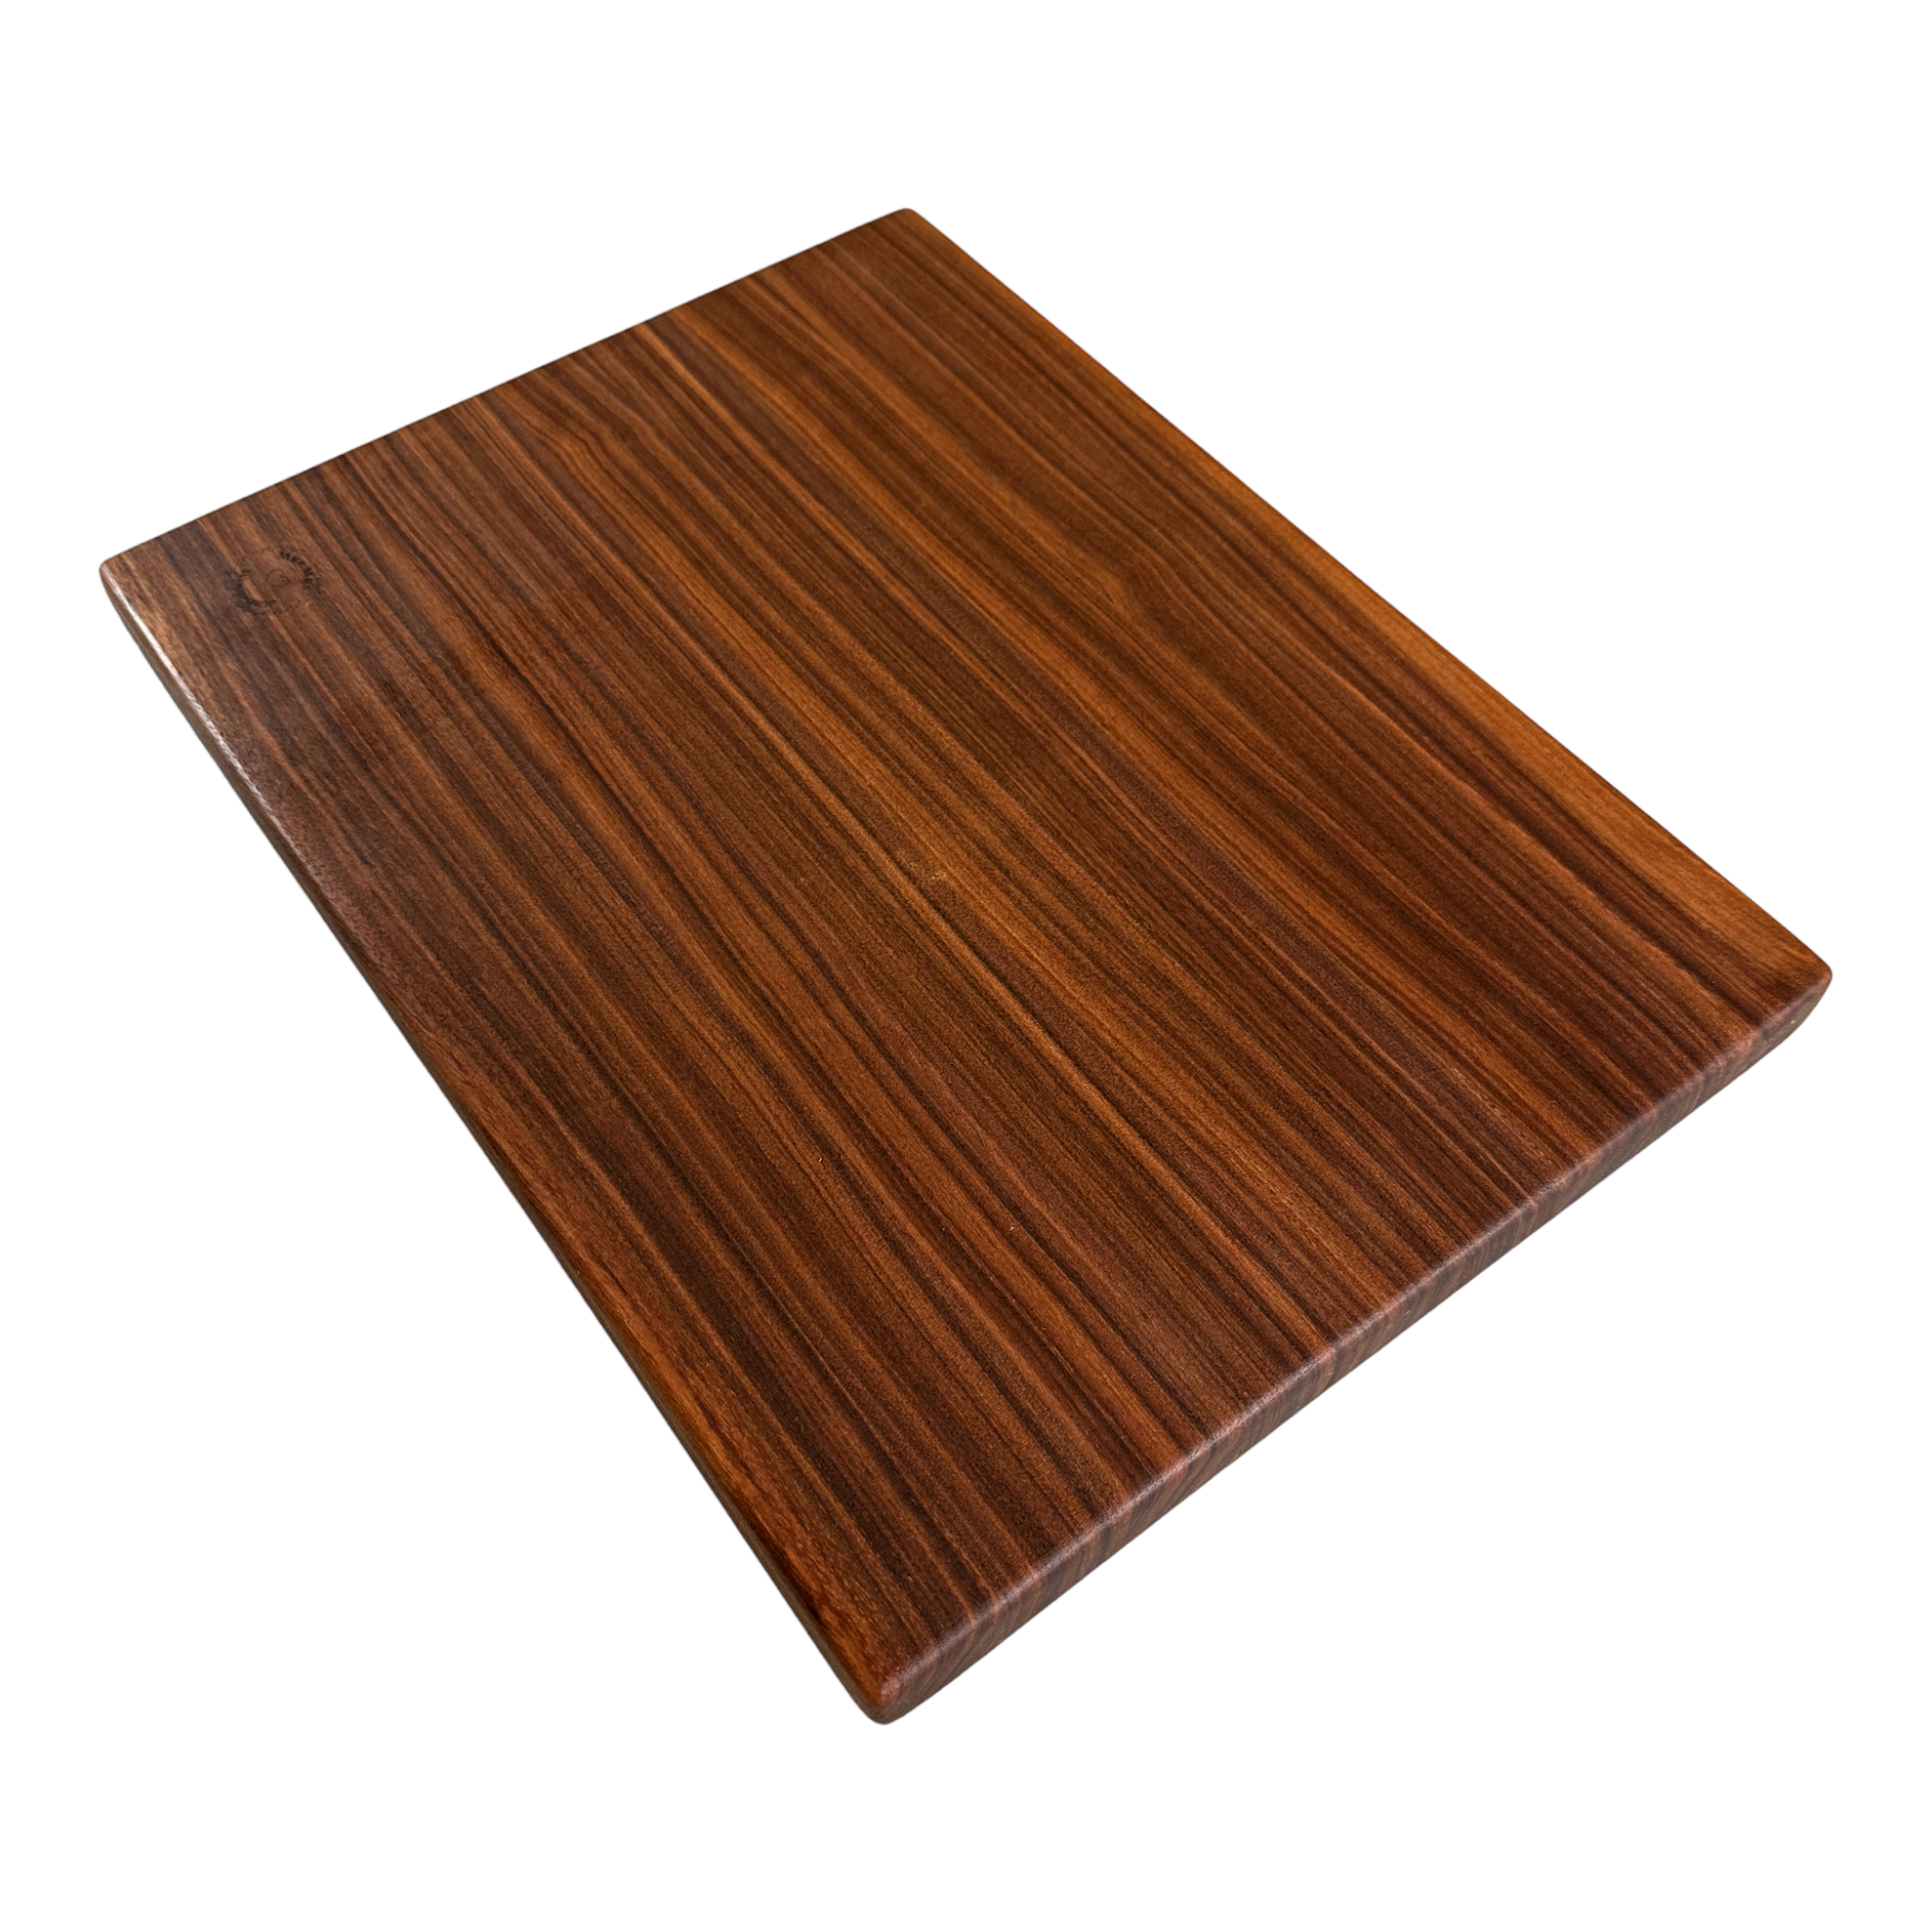 Walnut Wood Cutting Board 